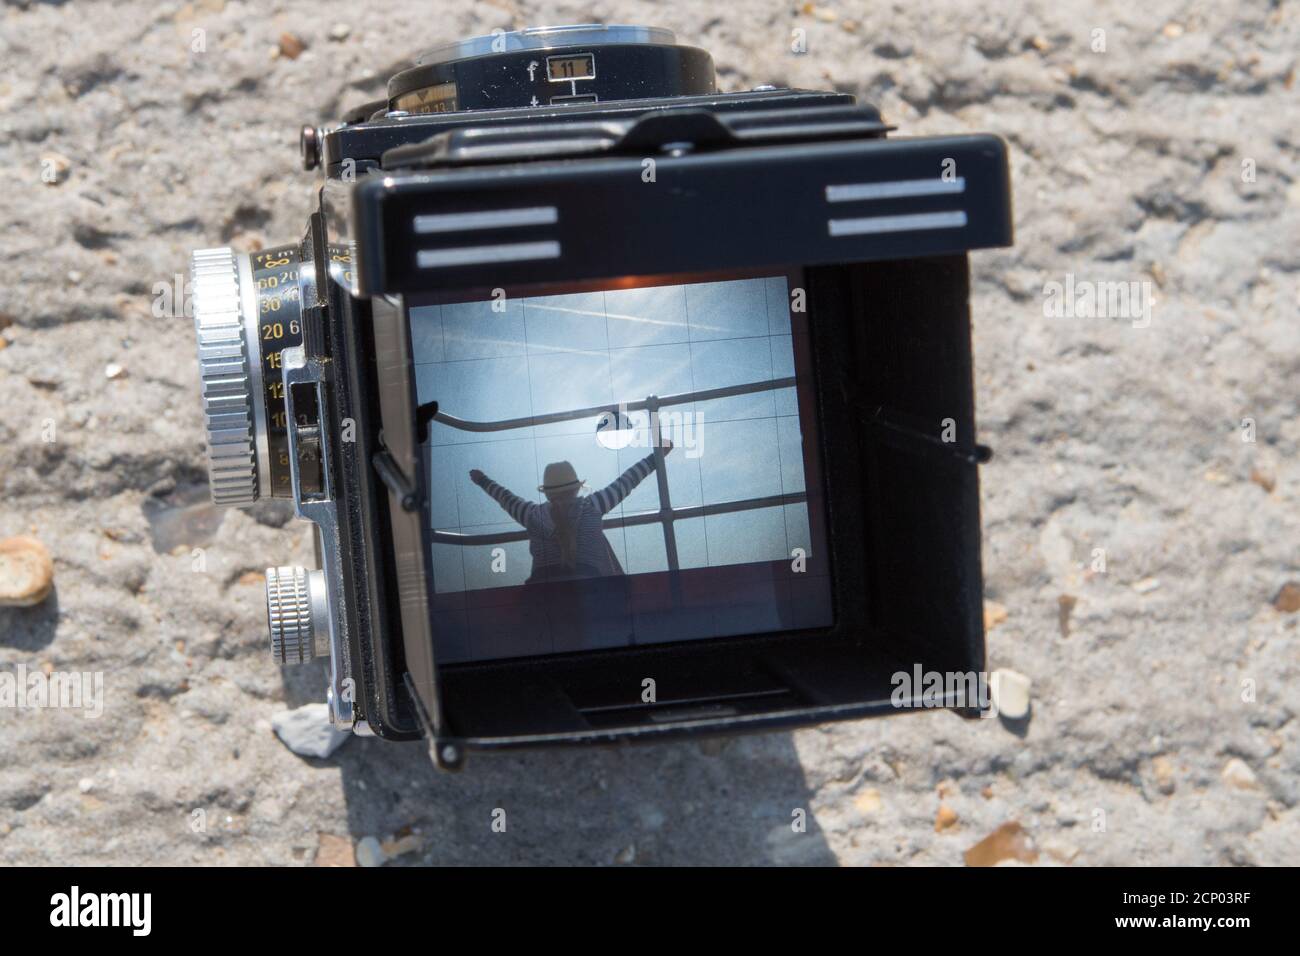 Una fotocamera reflex doppia Rolleiflex vintage che incornicia un soggetto una scena da spiaggia nel mirino Foto Stock